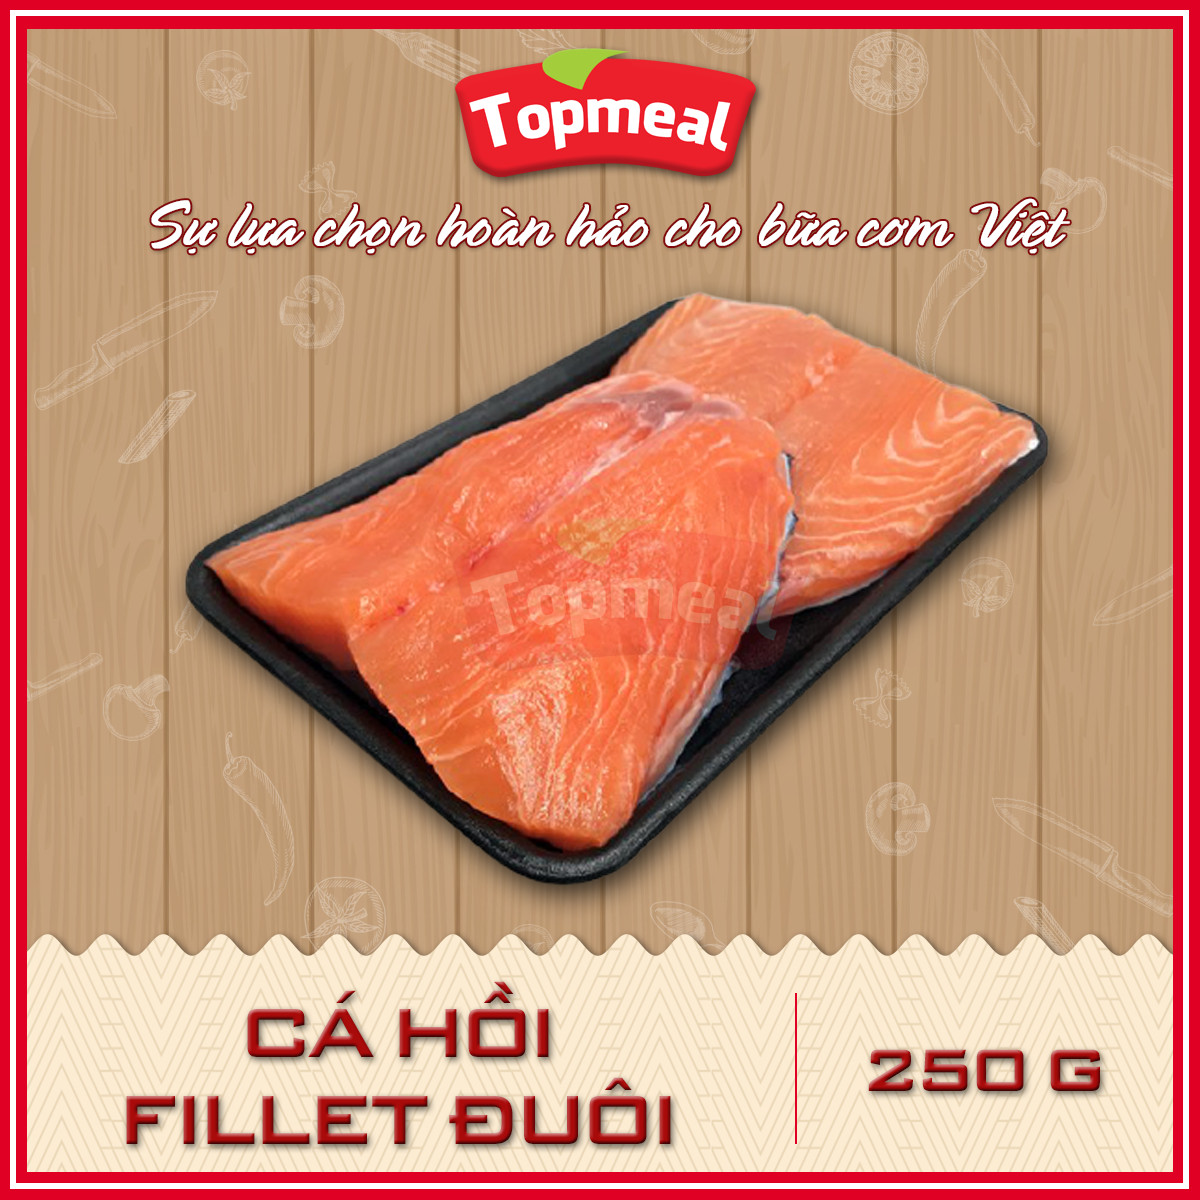 HCM - Cá hồi fillet đuôi (250g)  - Thích hợp với các món nướng, chiên bơ, sốt áp chảo, ruốc cá, cháo cá,... - [Giao nhanh TPHCM]